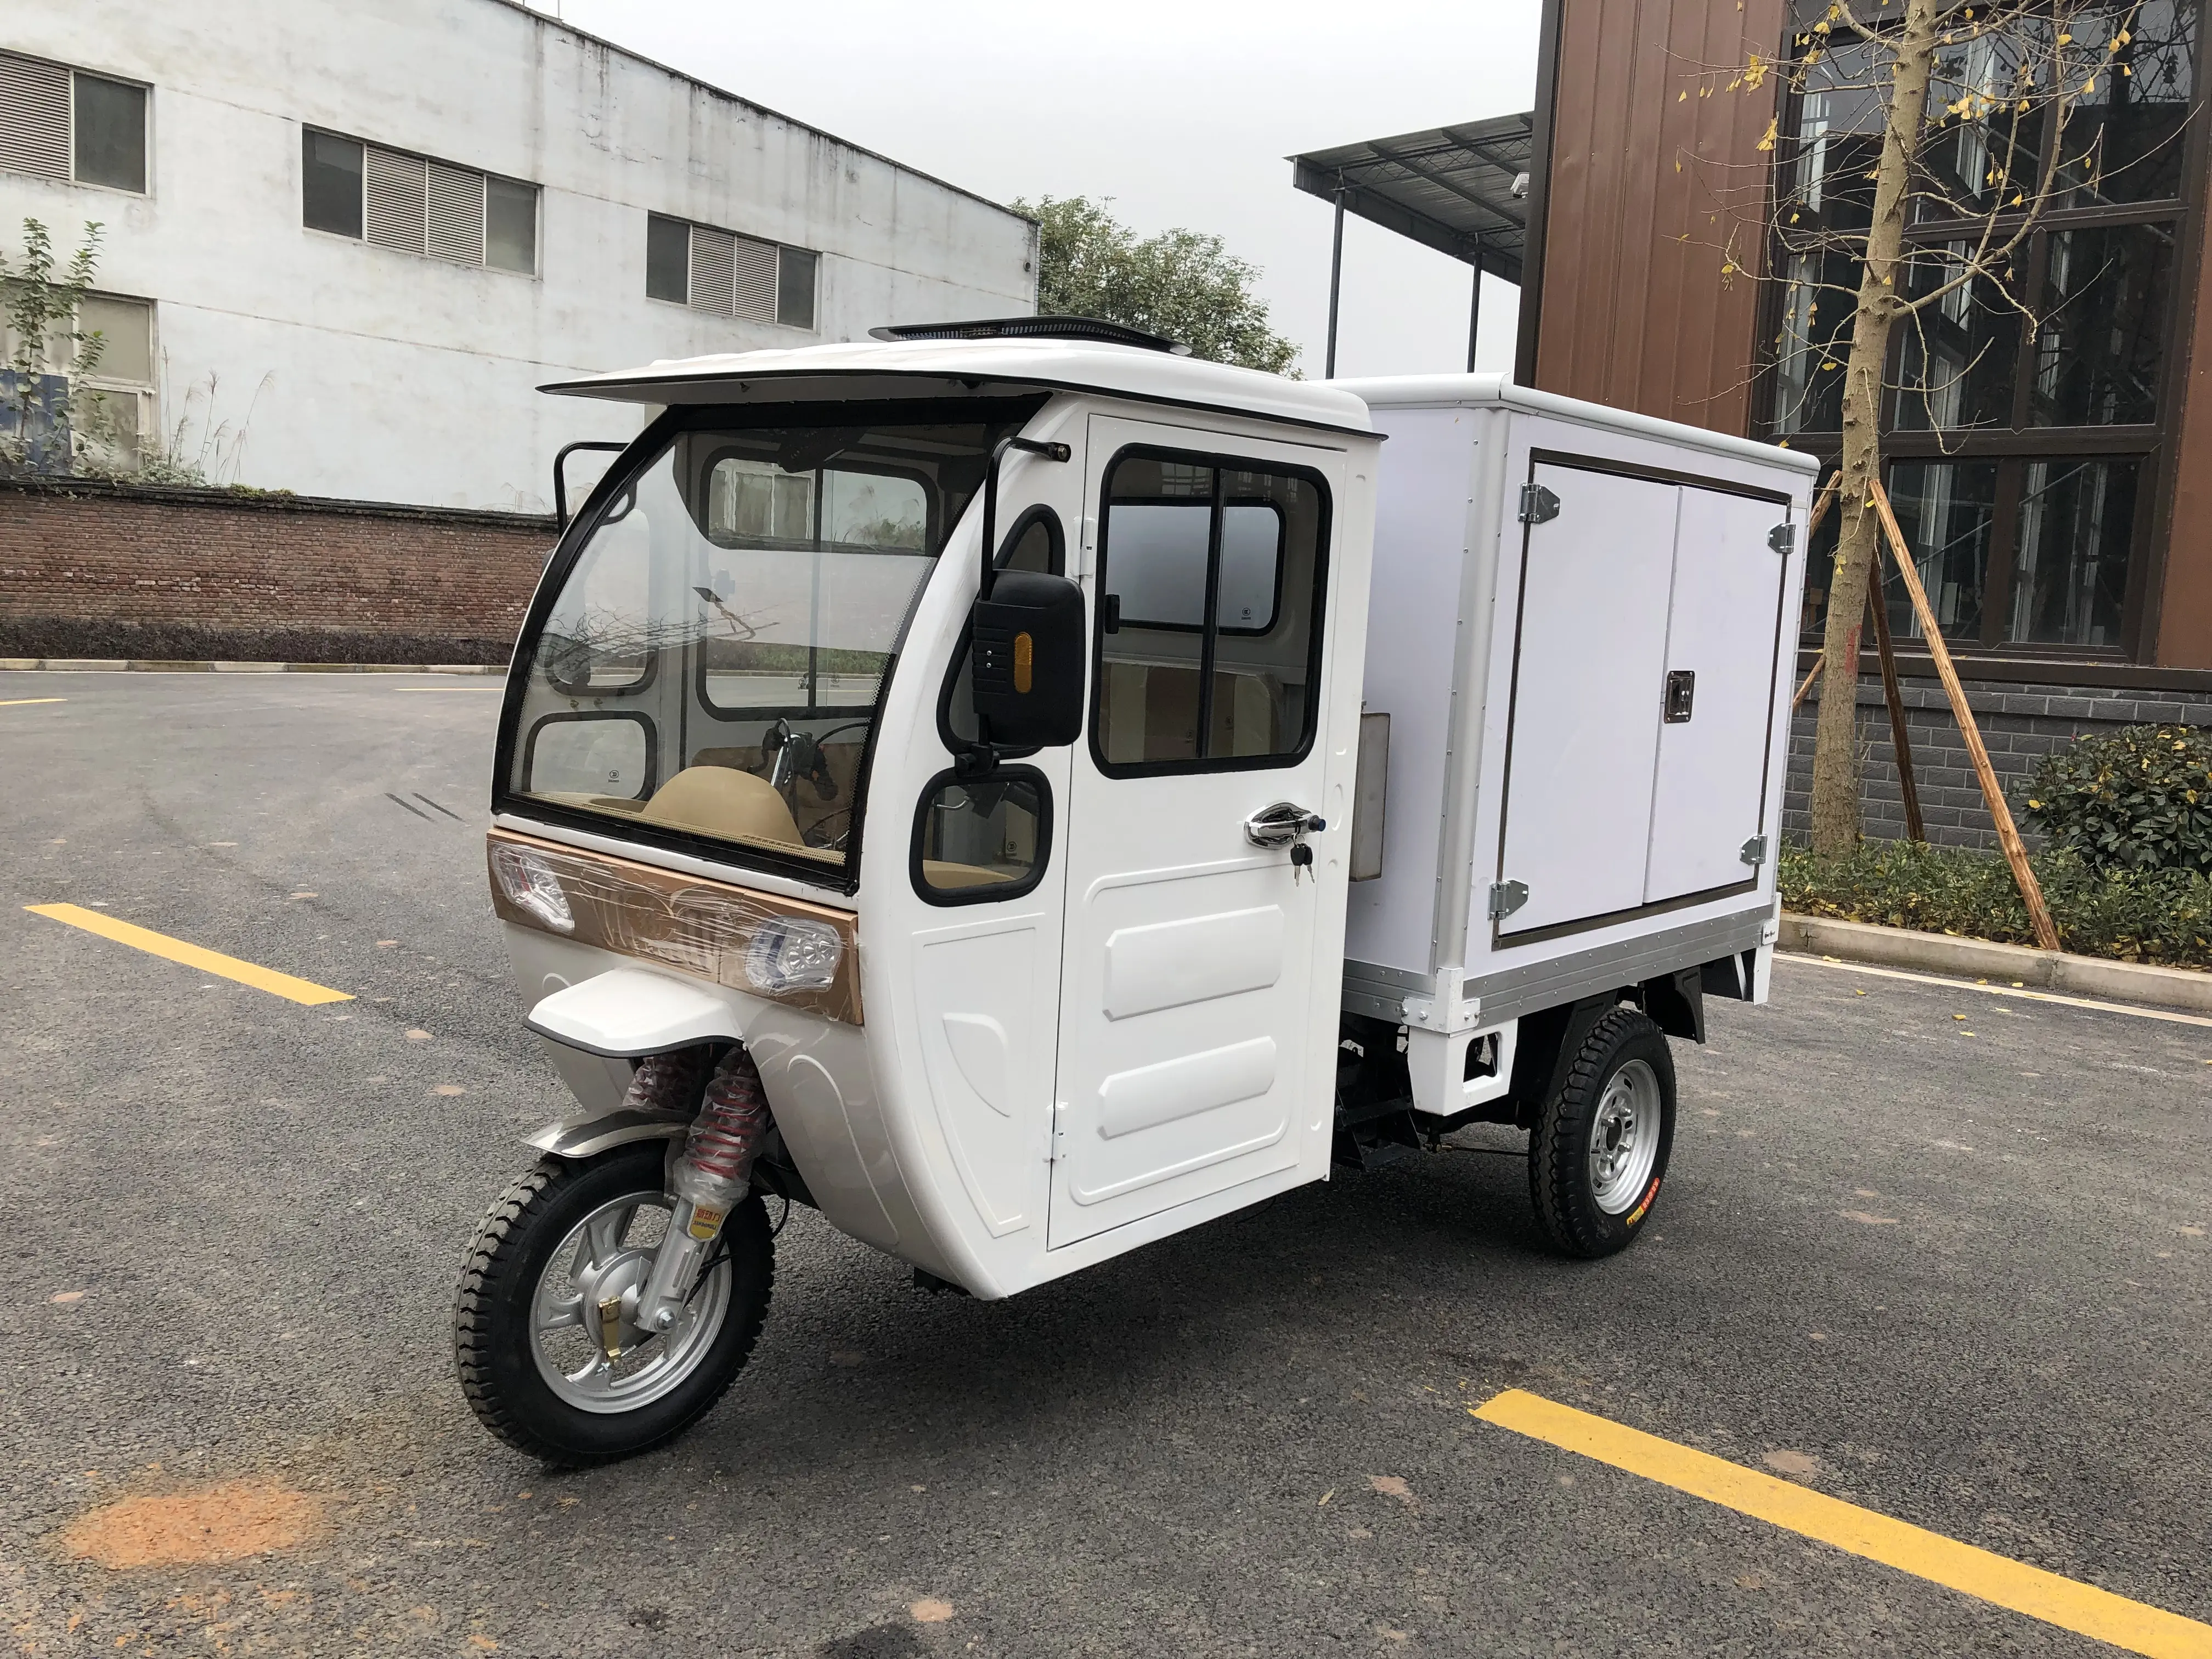 200cc catena del freddo di trasporto, triciclo con unità di refrigerazione, triciclo motorizzato, triciclo refrigerato